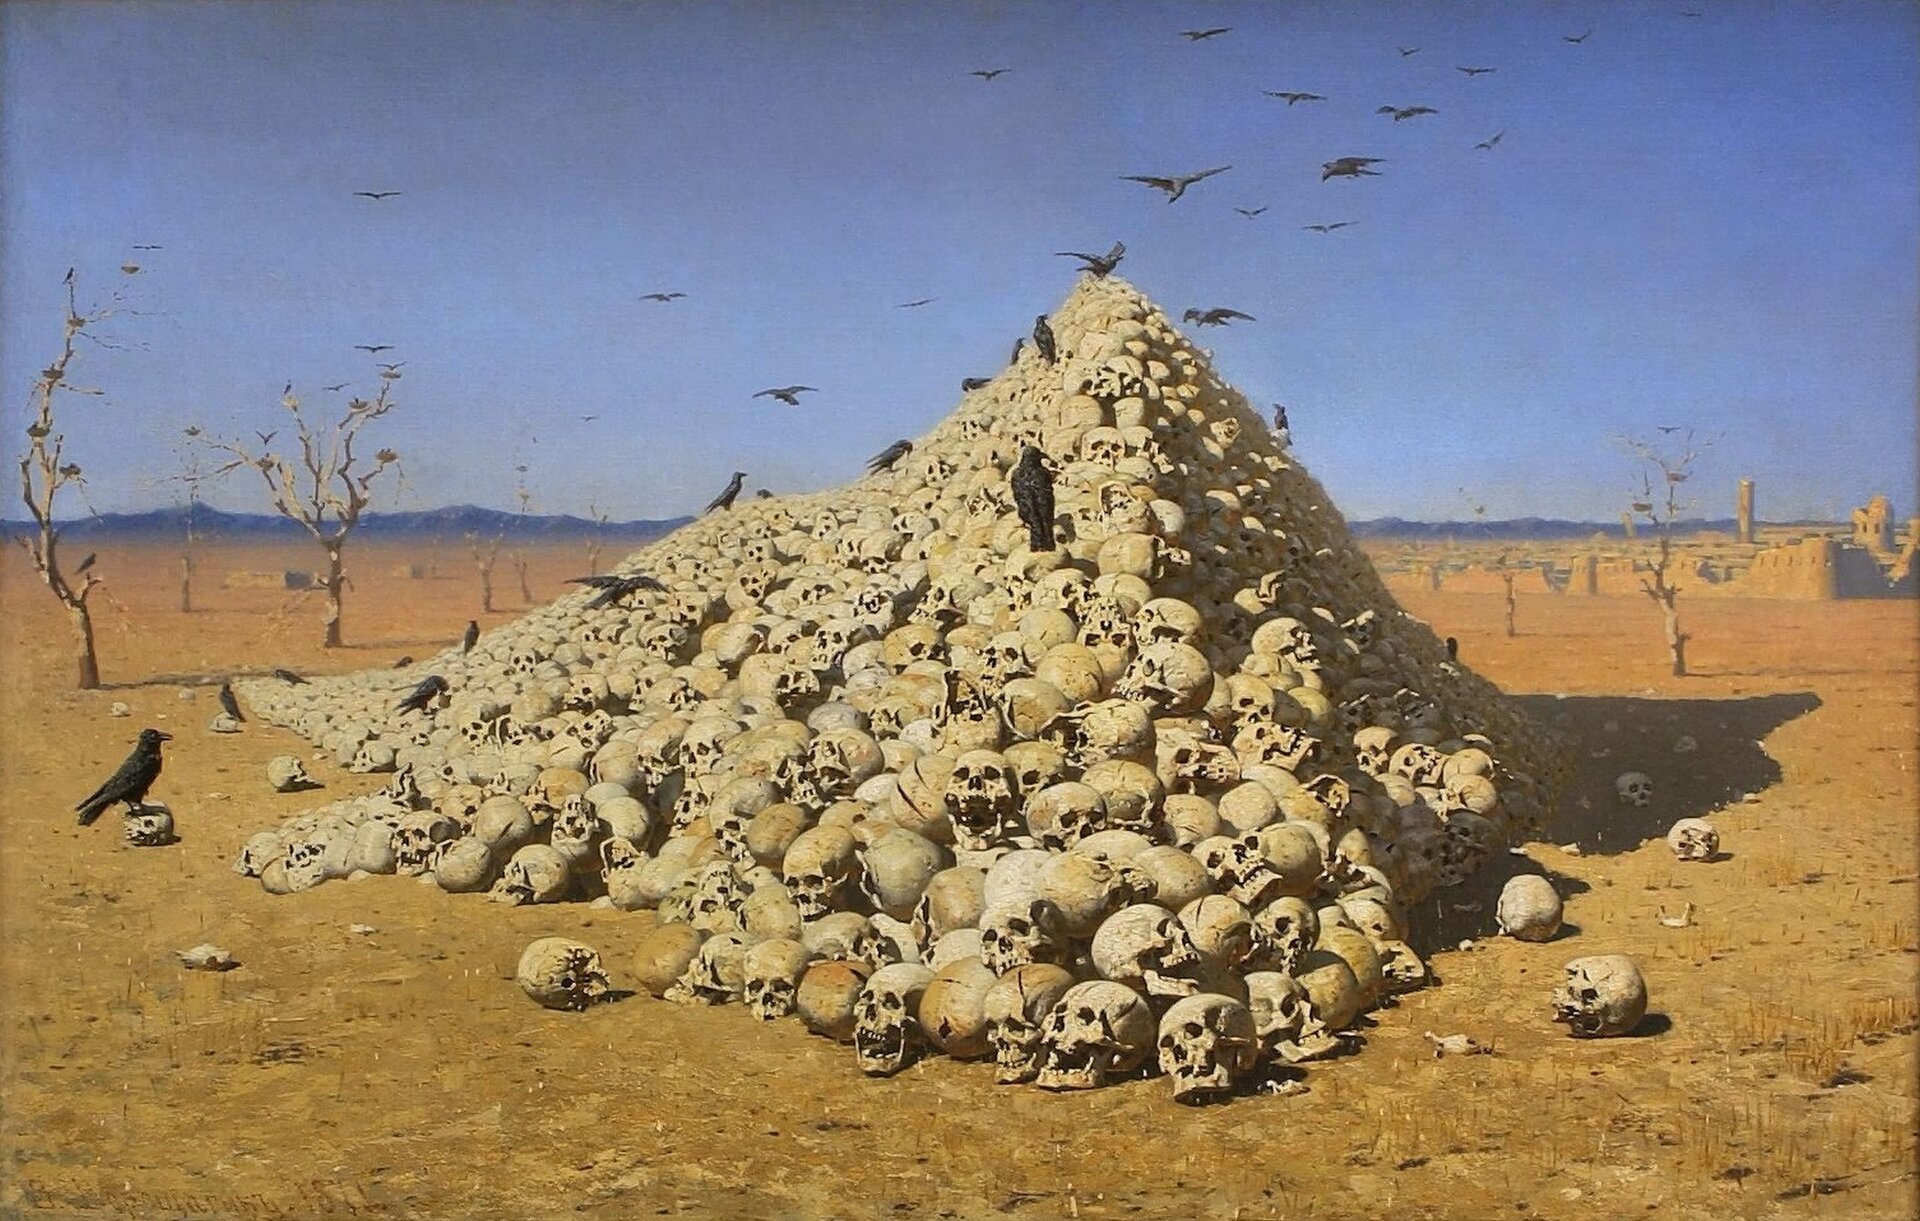 Ilustracja przedstawia dzieło Wereszczagin, „Apoteoza wojny”, które przedstawia ludzkie czaszki ułożone w skarpę. Nad czaszkami latają czarne ptaki.